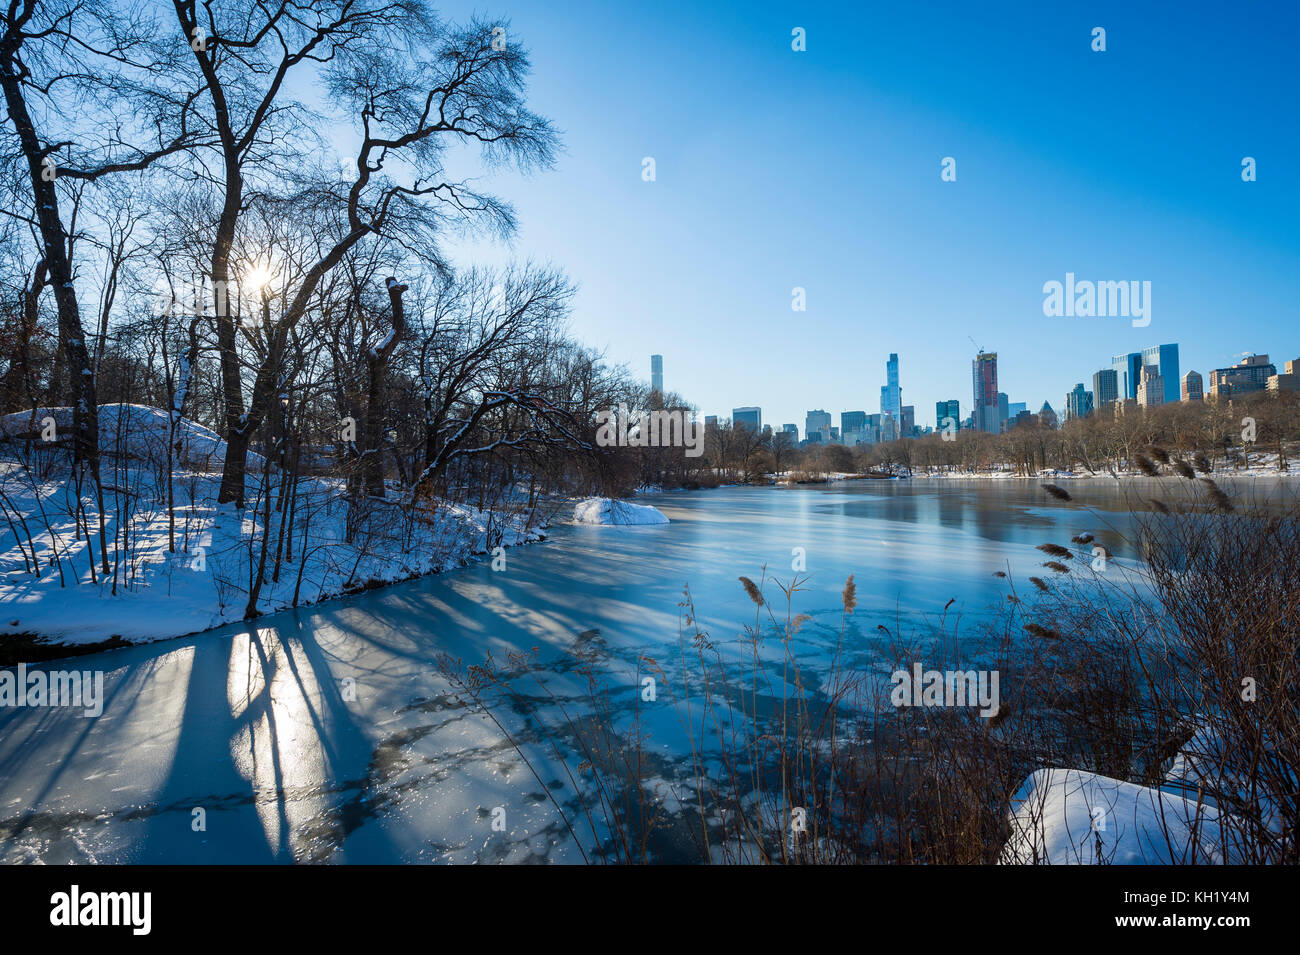 Malerische Aussicht auf die Skyline von Midtown in das Eis des zugefrorenen Central Park See spiegelt die Morgen nach einem Winter Schnee Sturm in new york city Stockfoto